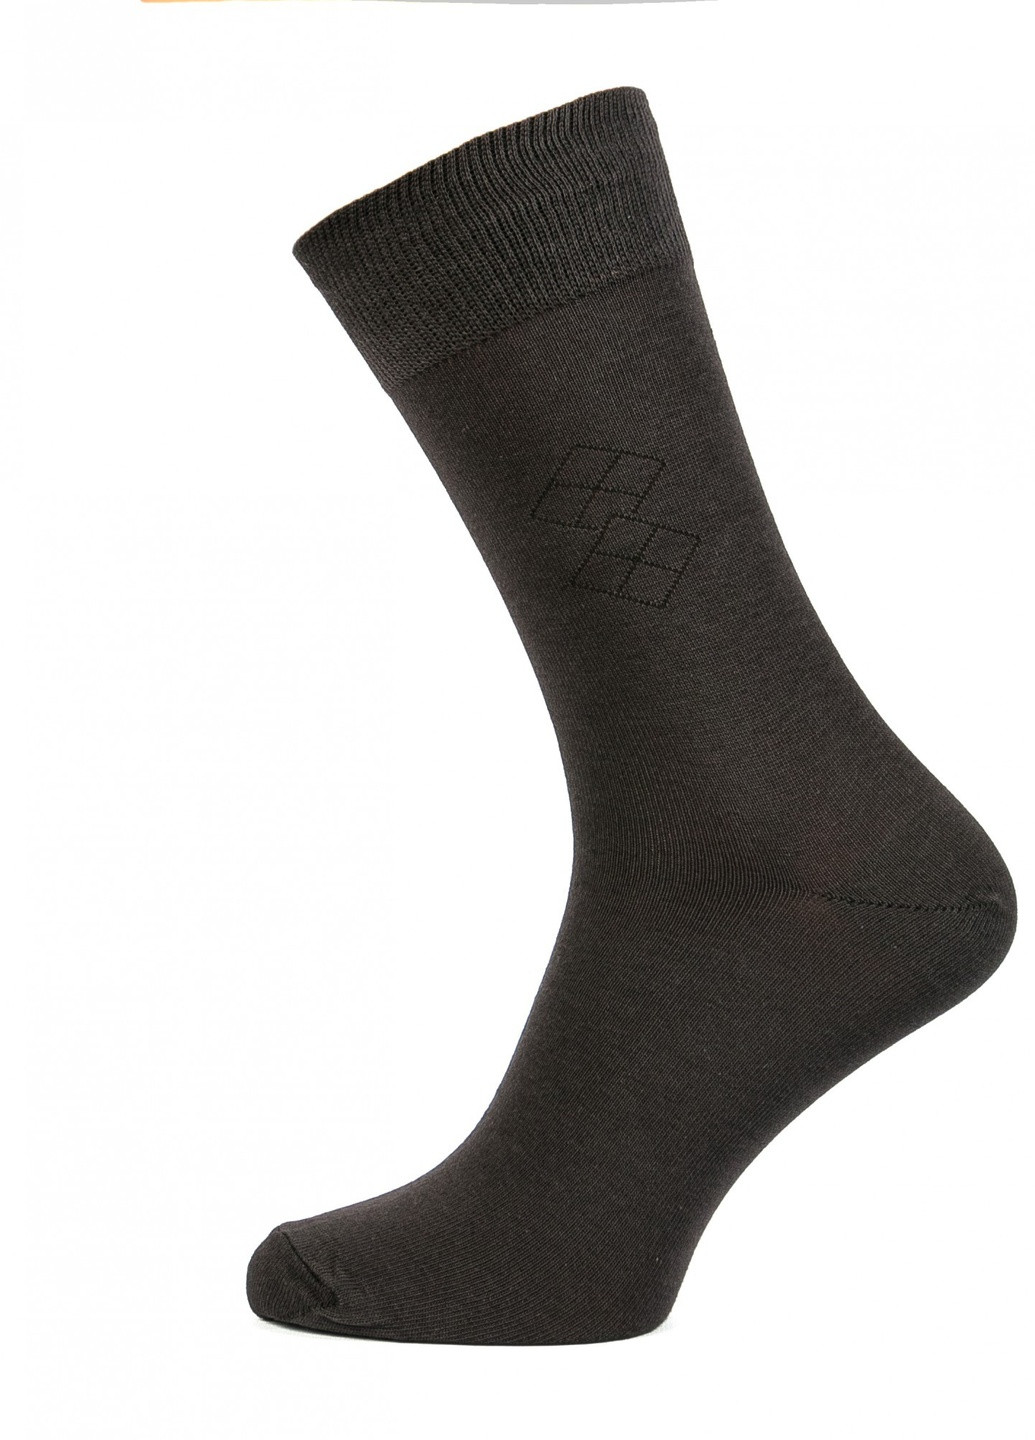 Шкарпетки чоловічі ТМ "Нова пара" 405 високі НОВА ПАРА висока модель (257062320)